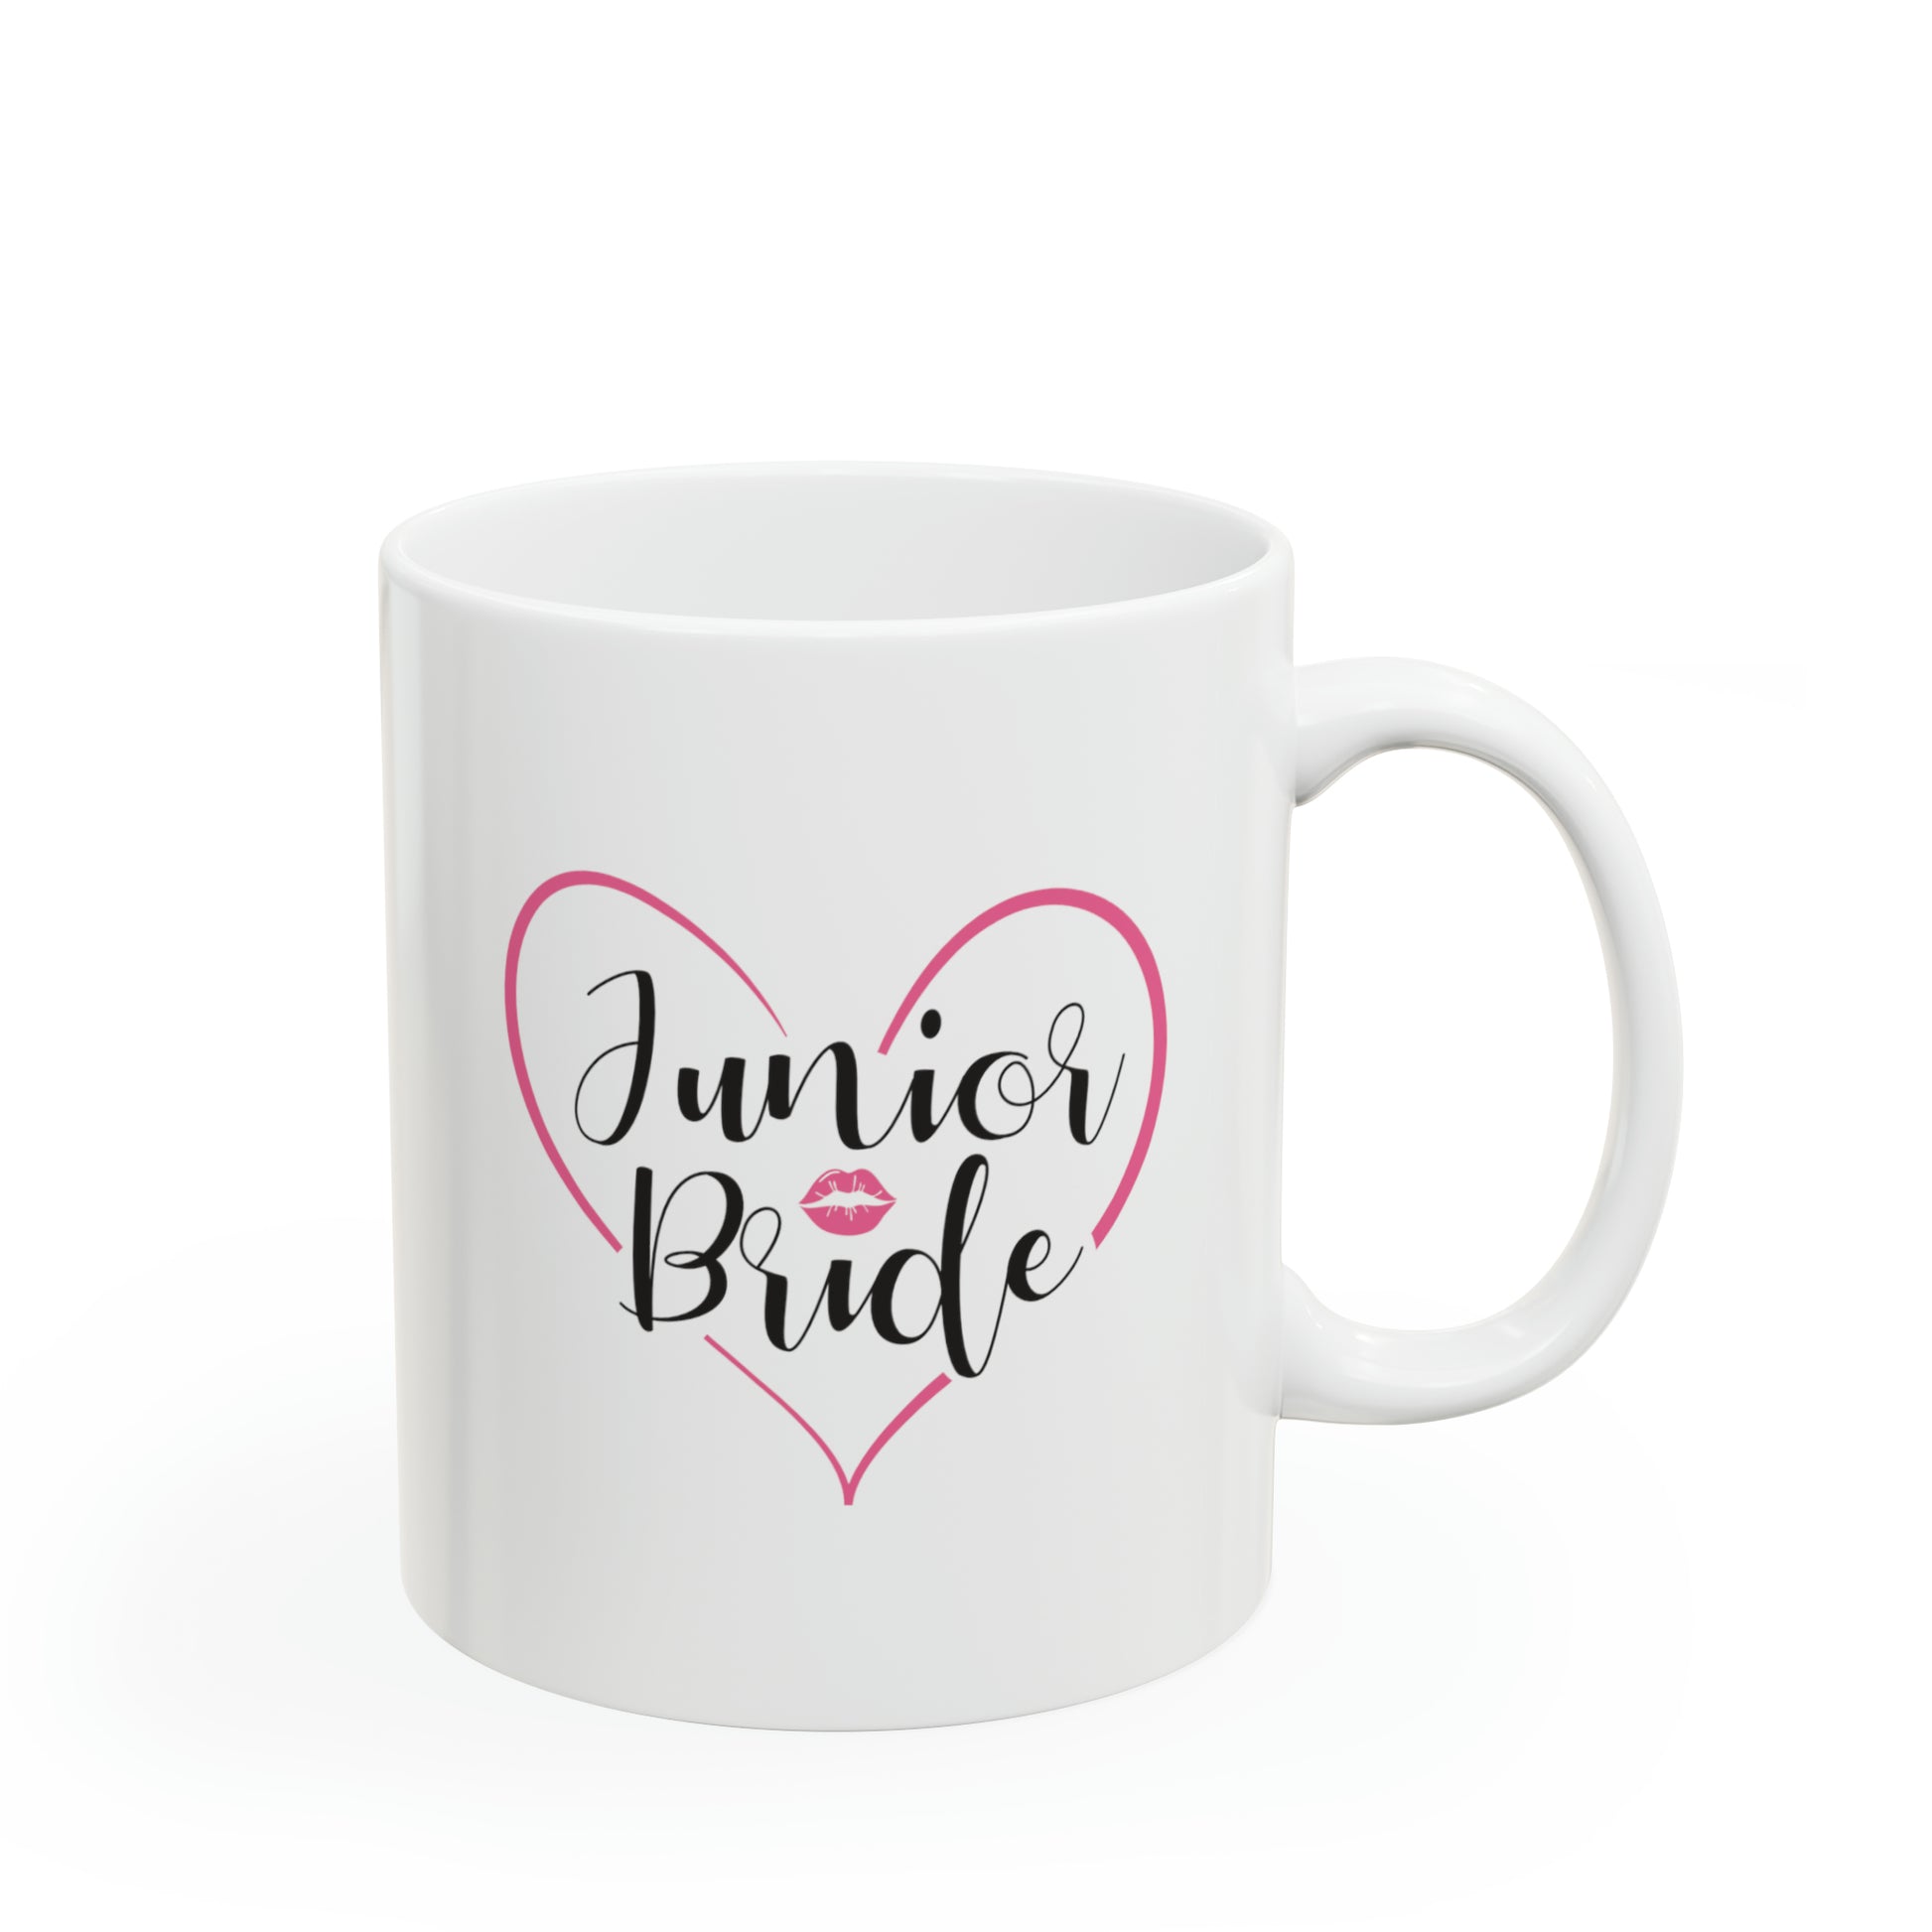 Junior Bride Cocoa Mug - Double Sided 11oz White Ceramic by TheGlassyLass.com